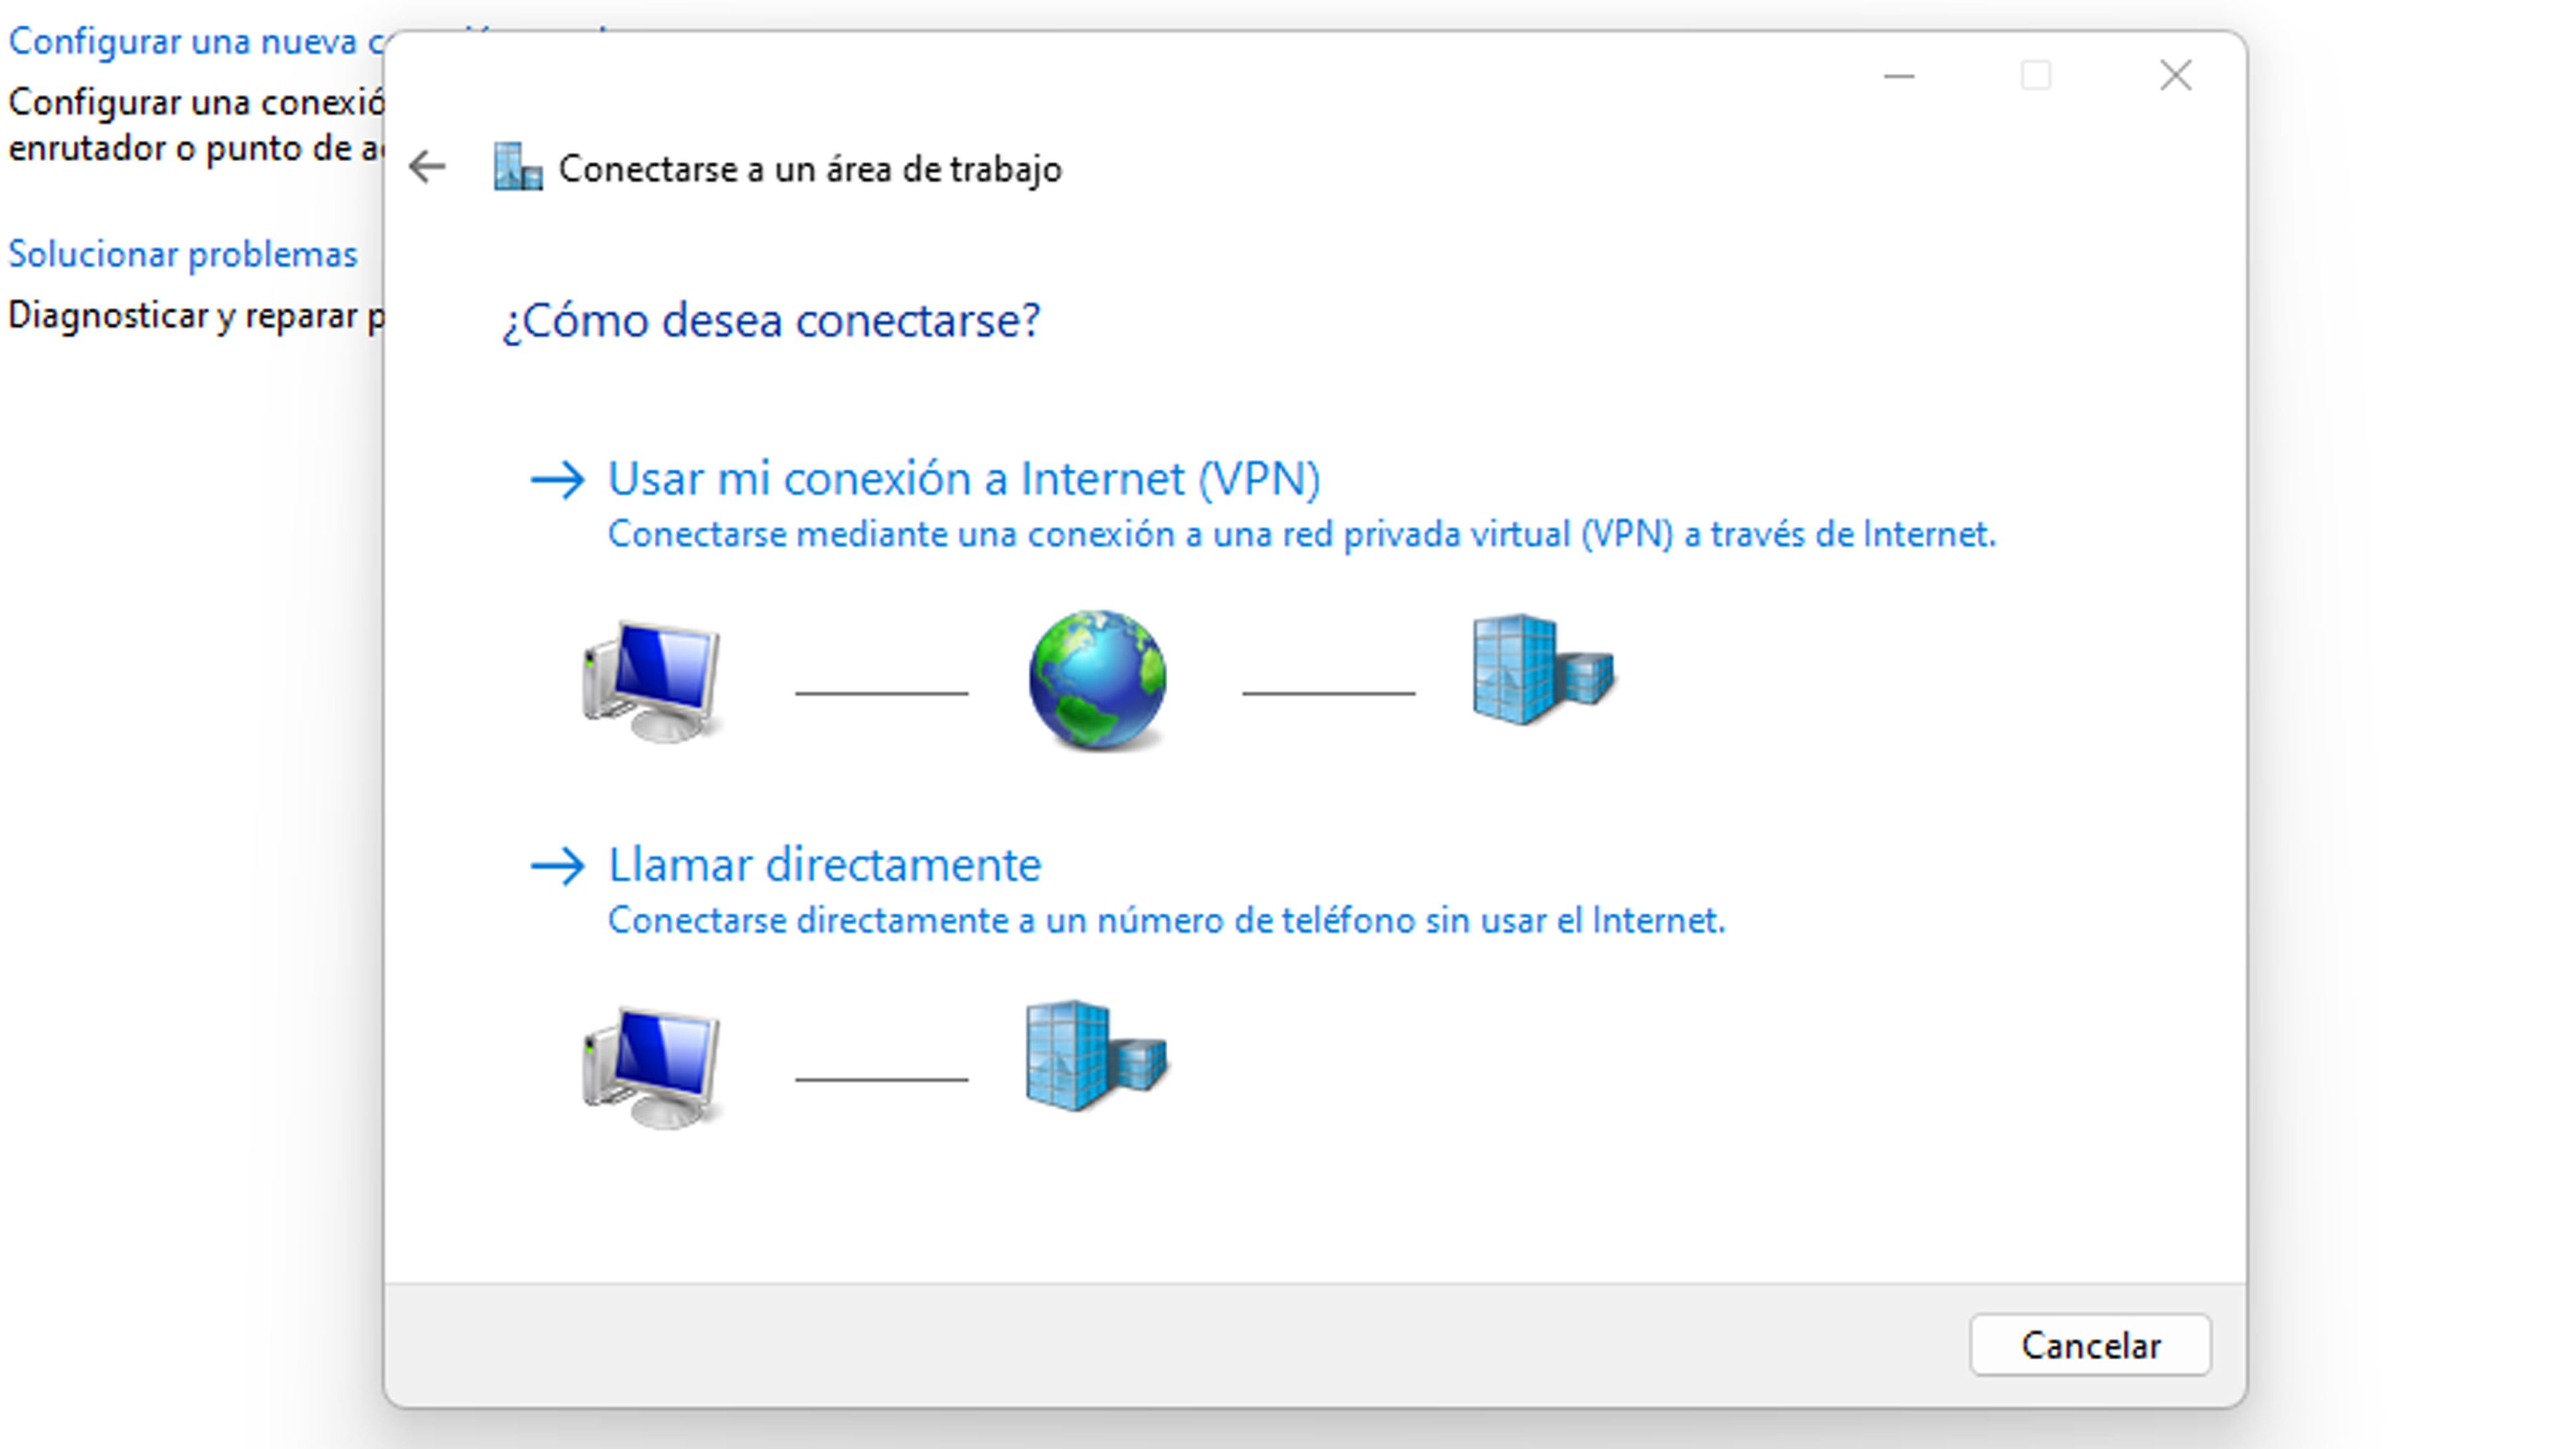 Usar mi conexión a Internet (VPN)